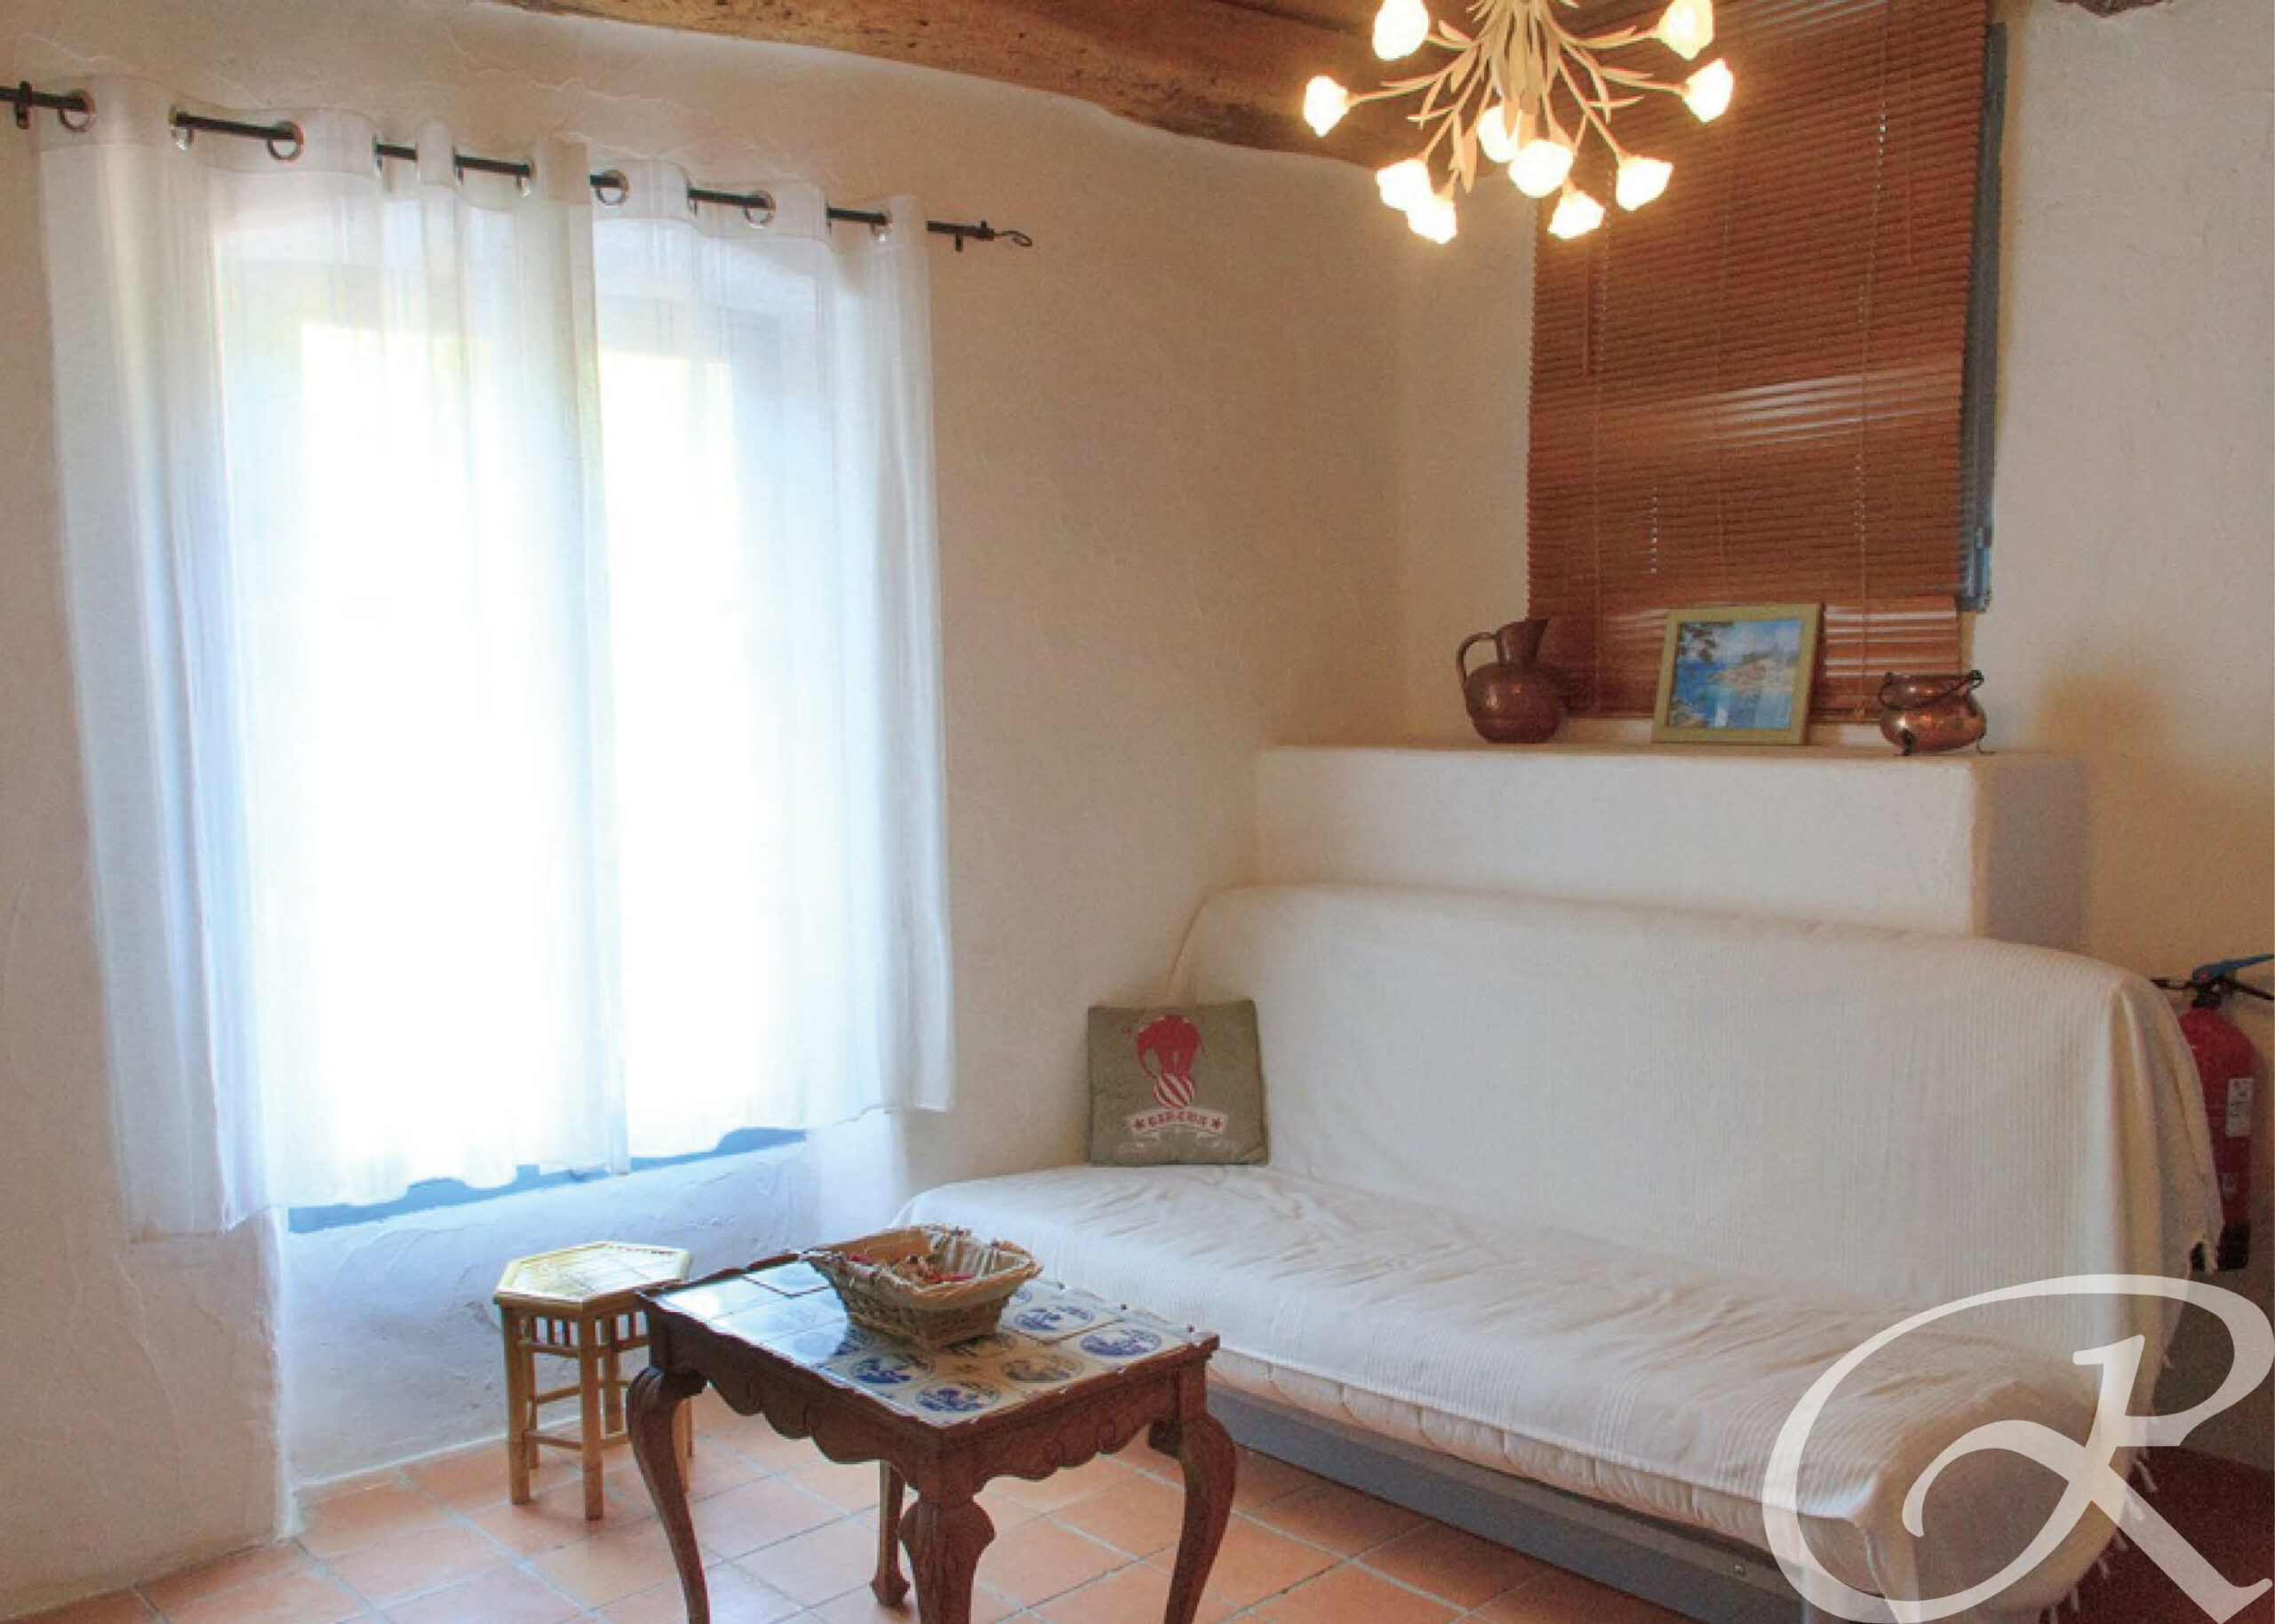 L’Appartement meublée de la Lavande vous offrira 80 m² T4 composés d’une chambre avec un lit double, une chambre avec 2 lits simples, d’un lit simple et d’un canapé lit dans le salon